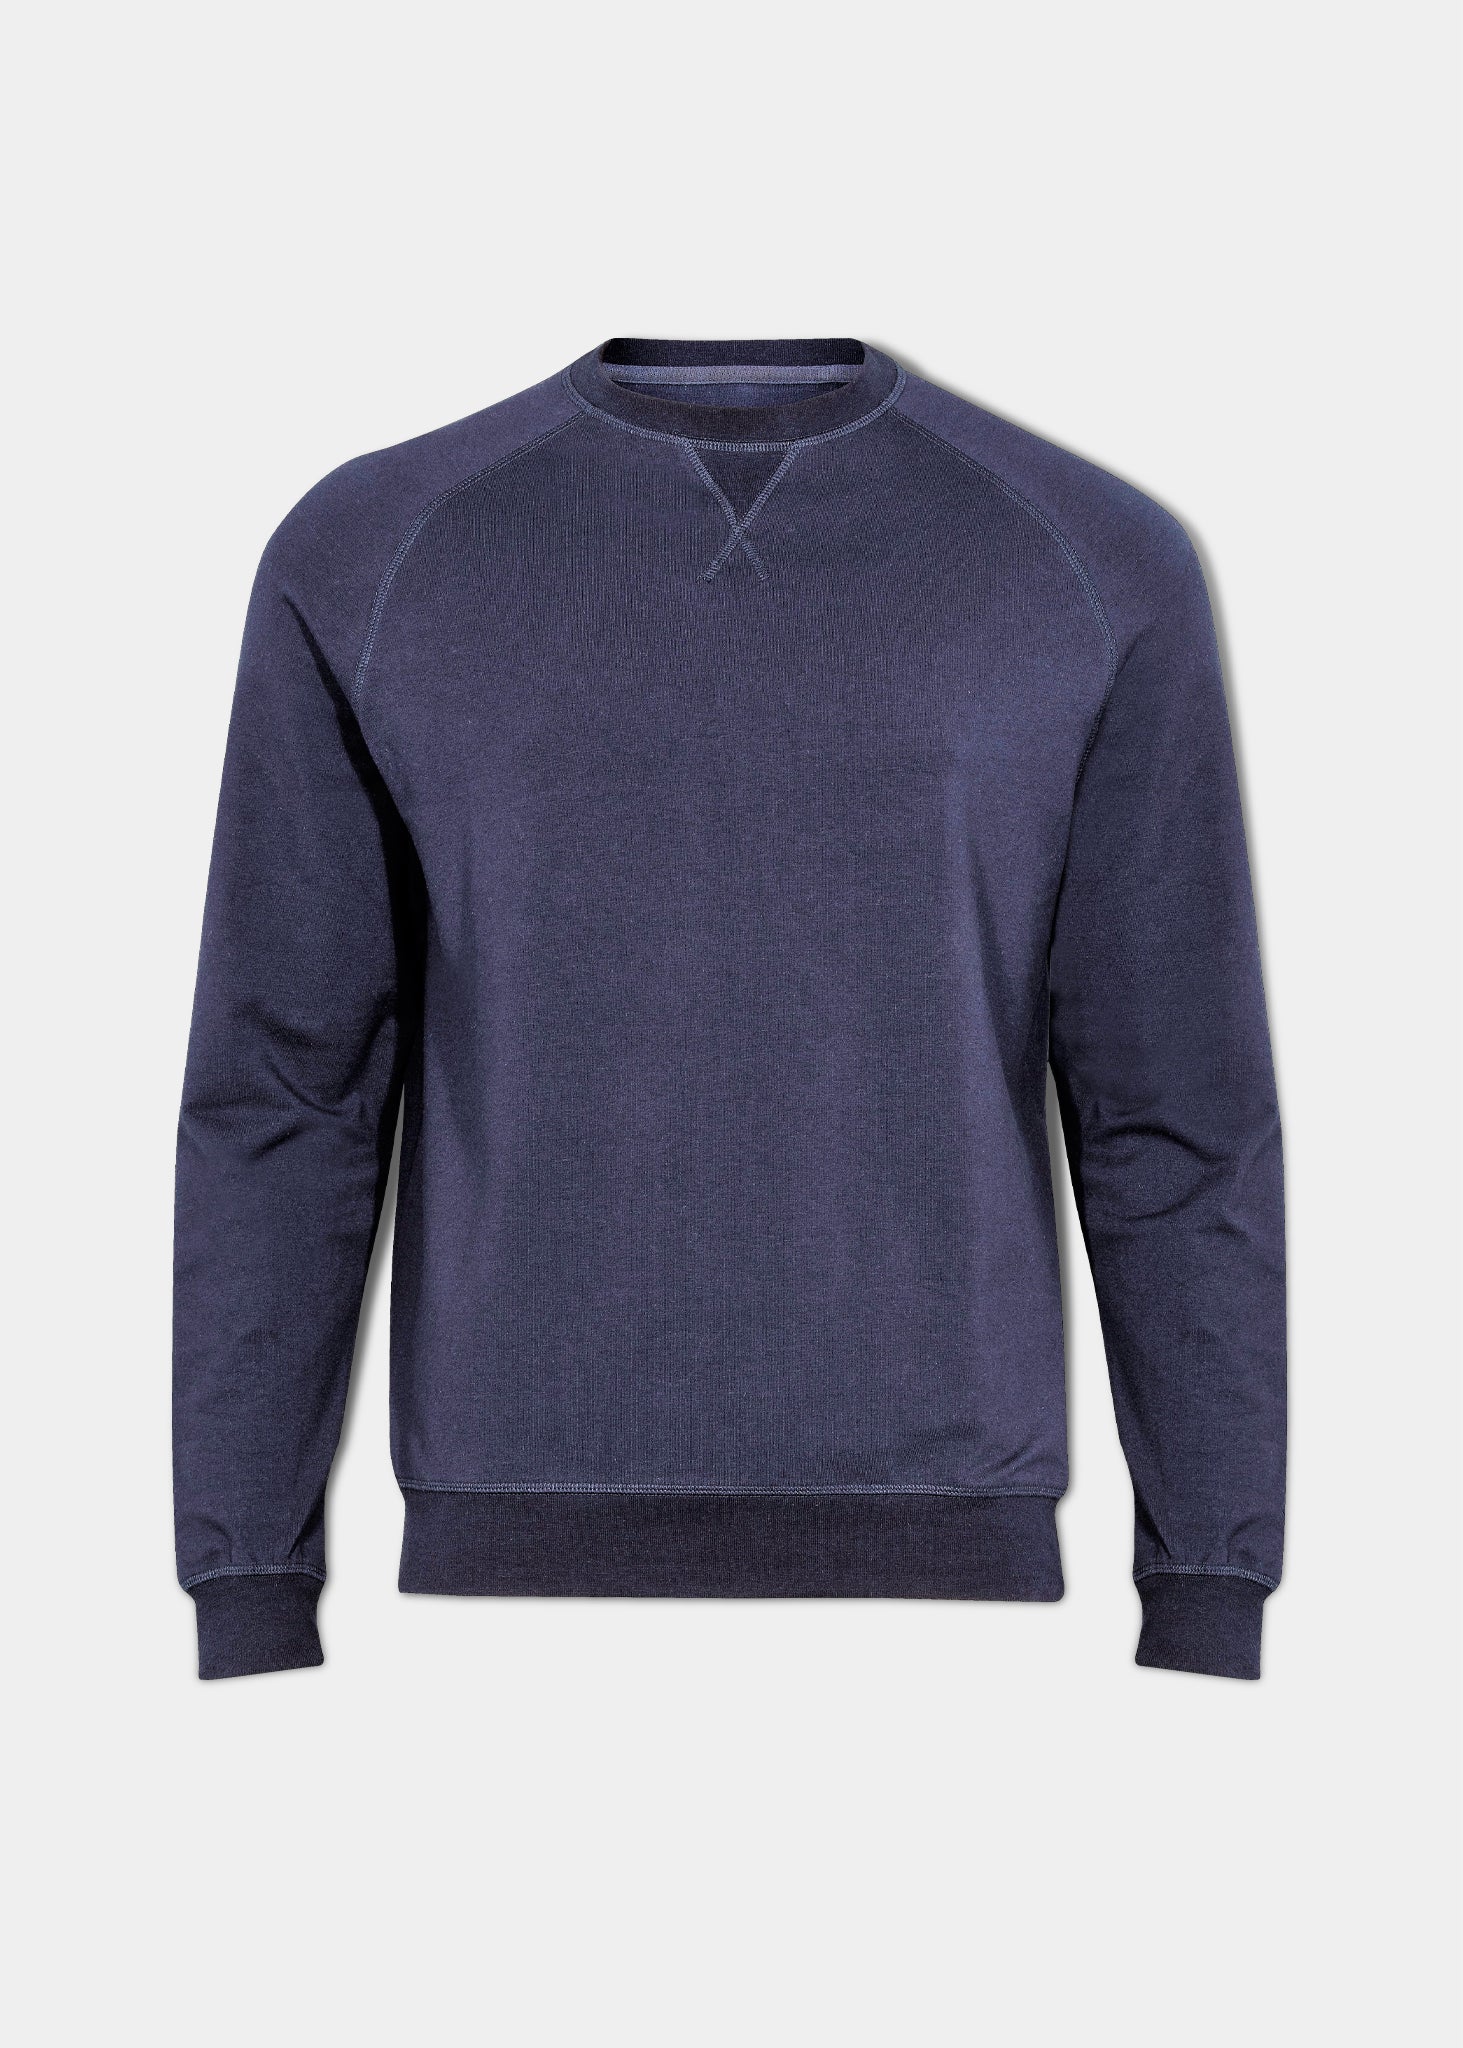 Men's cotton sweatshirt